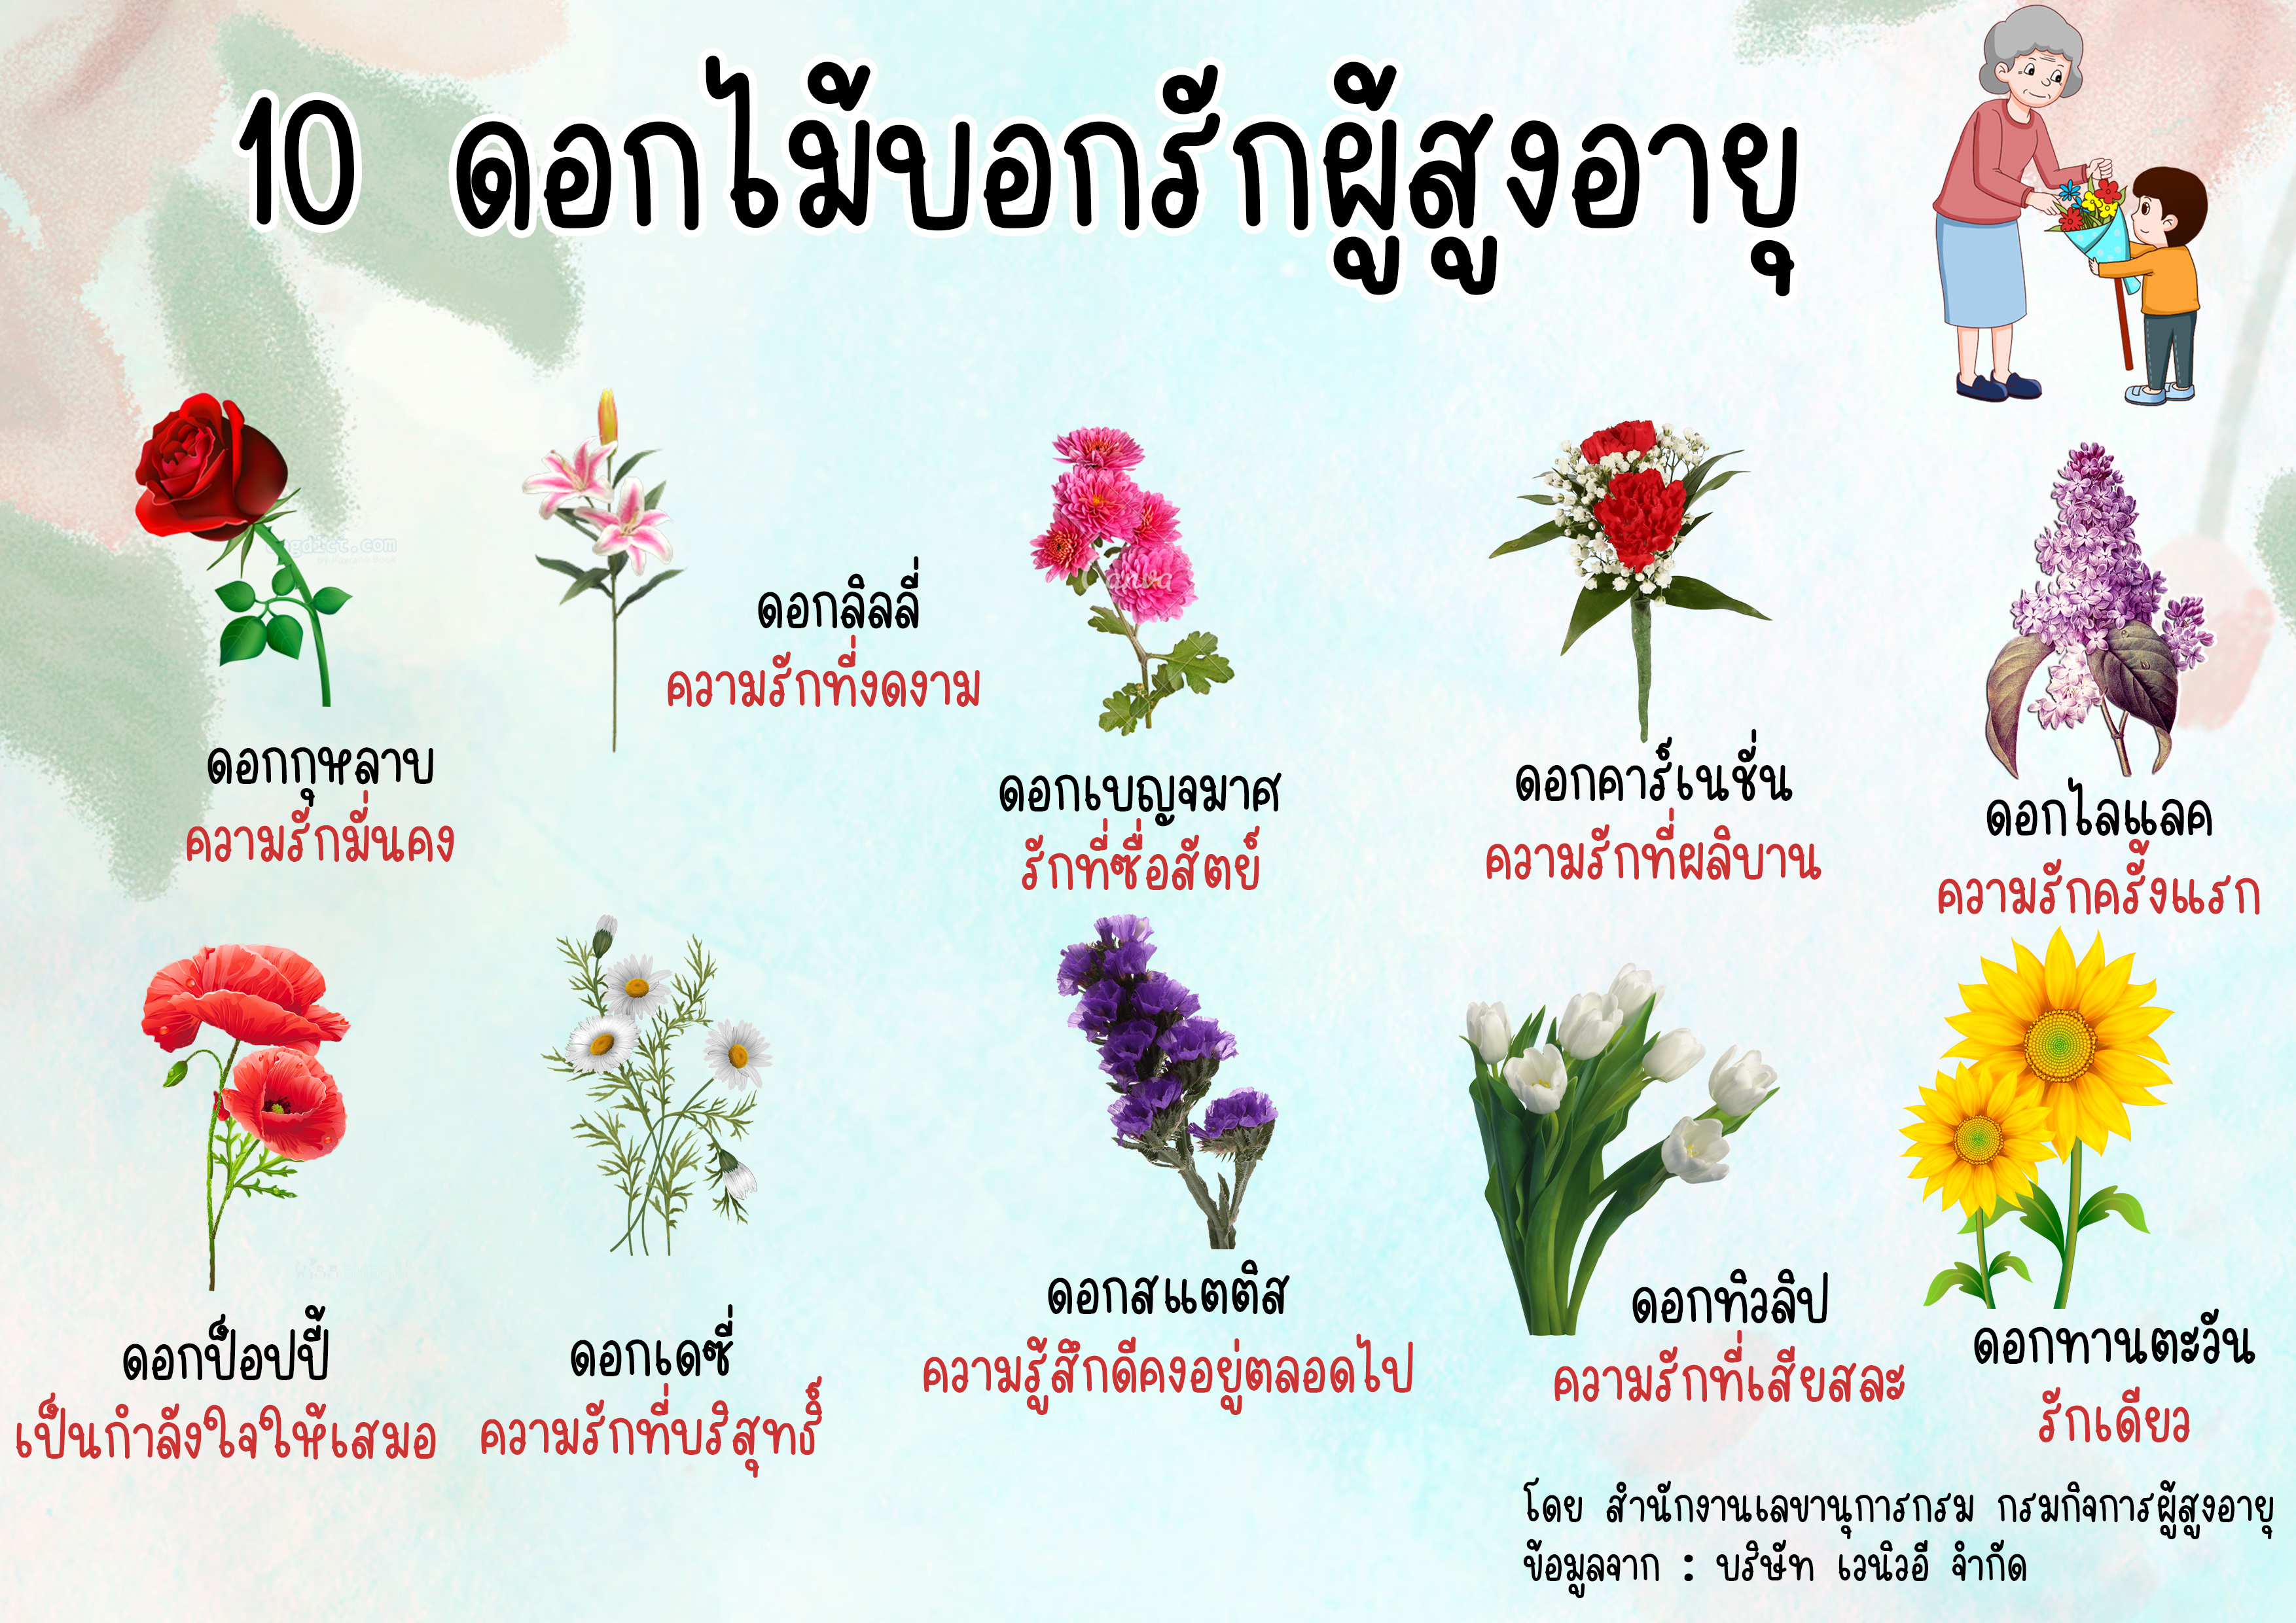 10 ดอกไม้บอกรักผู้สูงอายุ (สลก.)